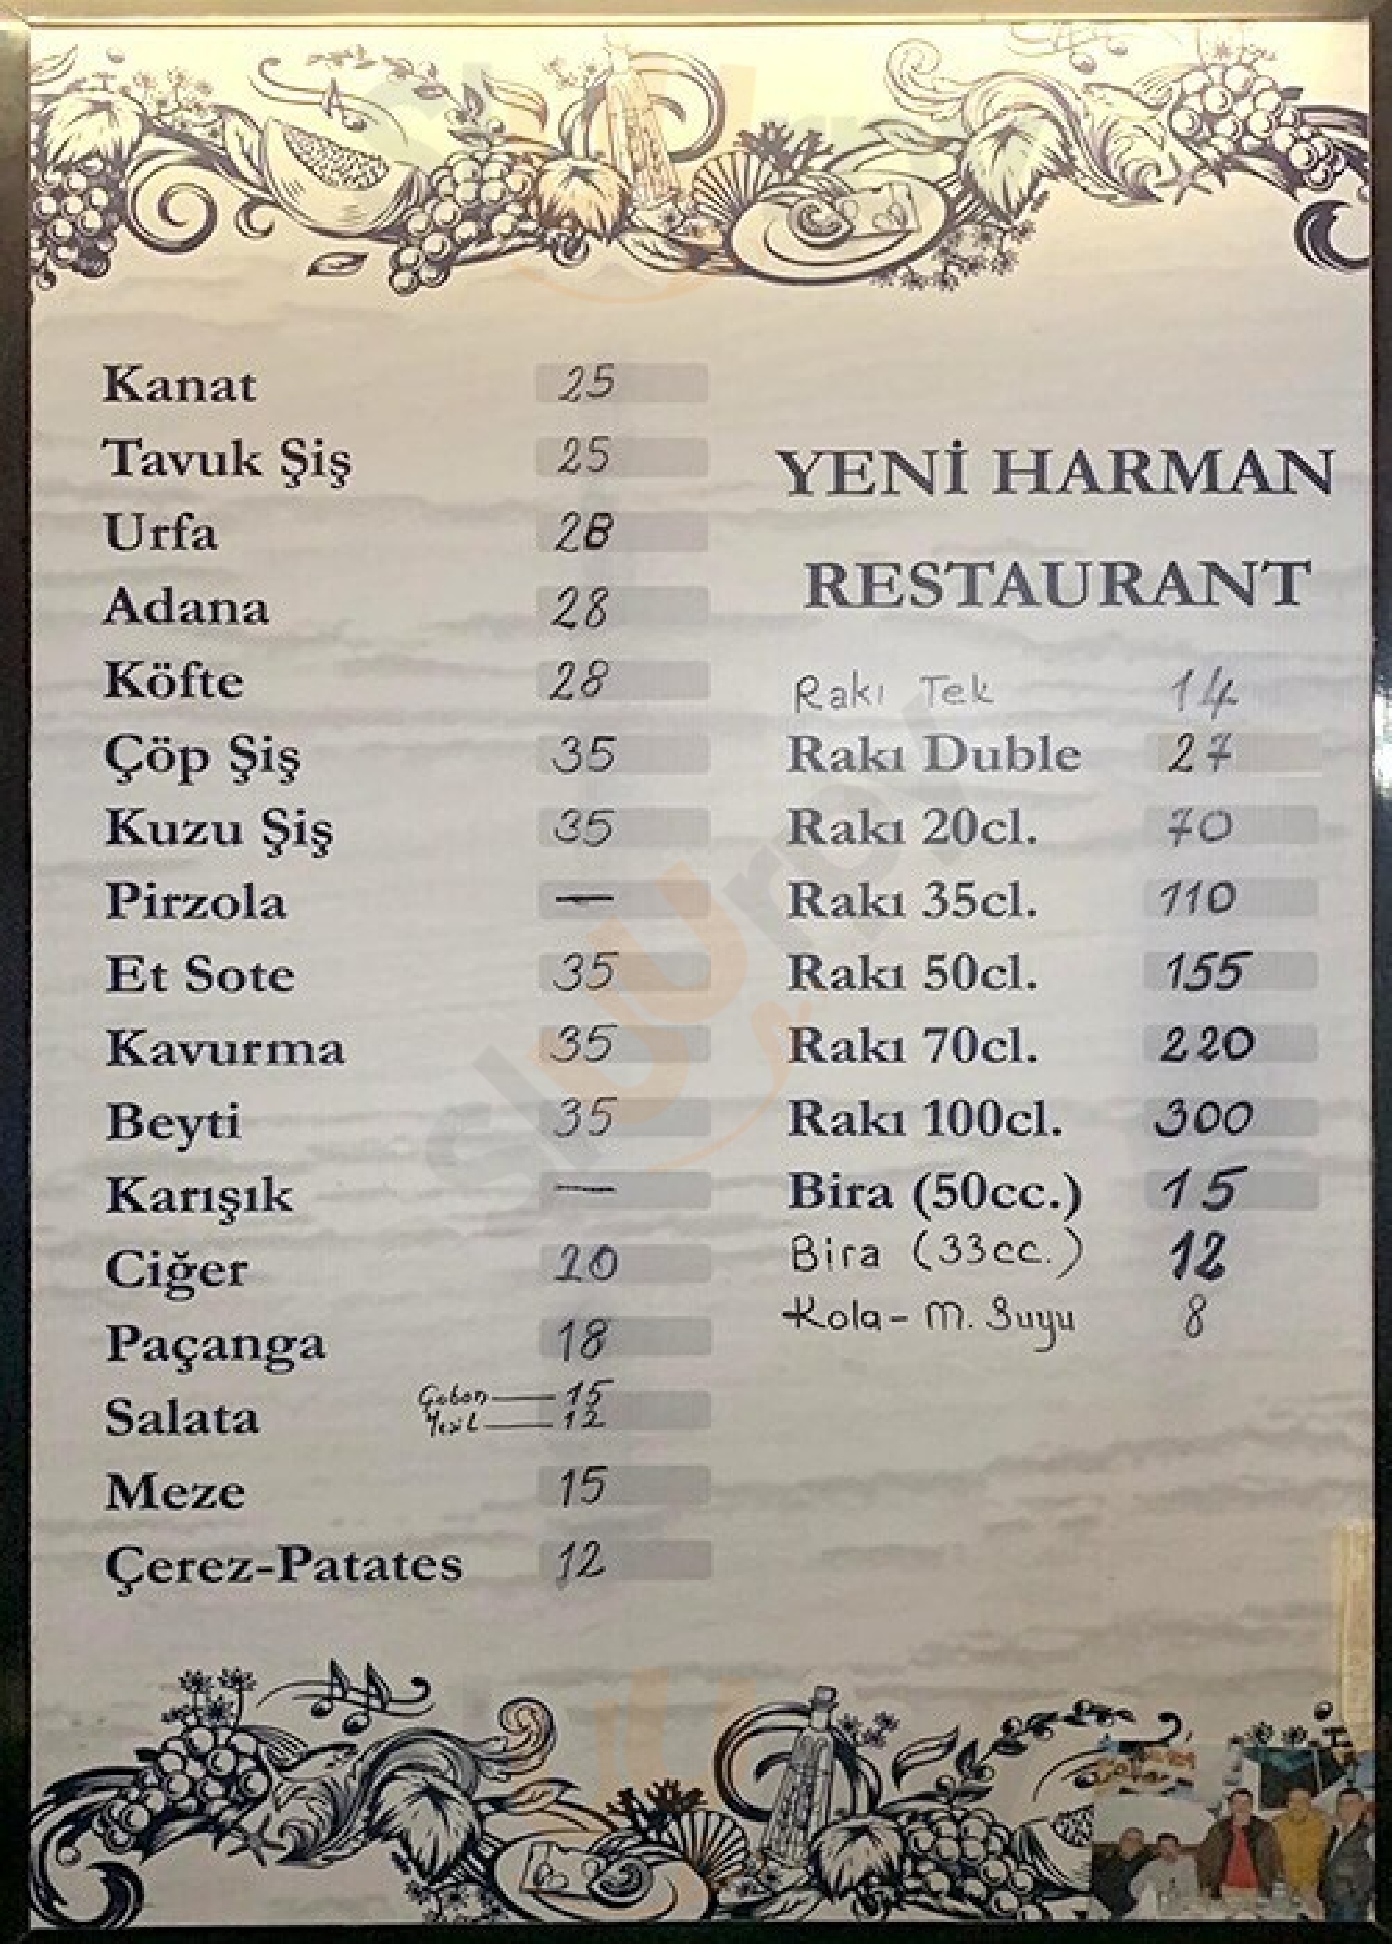 Yeni Harman Ocakbaşı Restaurant & Bar İstanbul Menu - 1